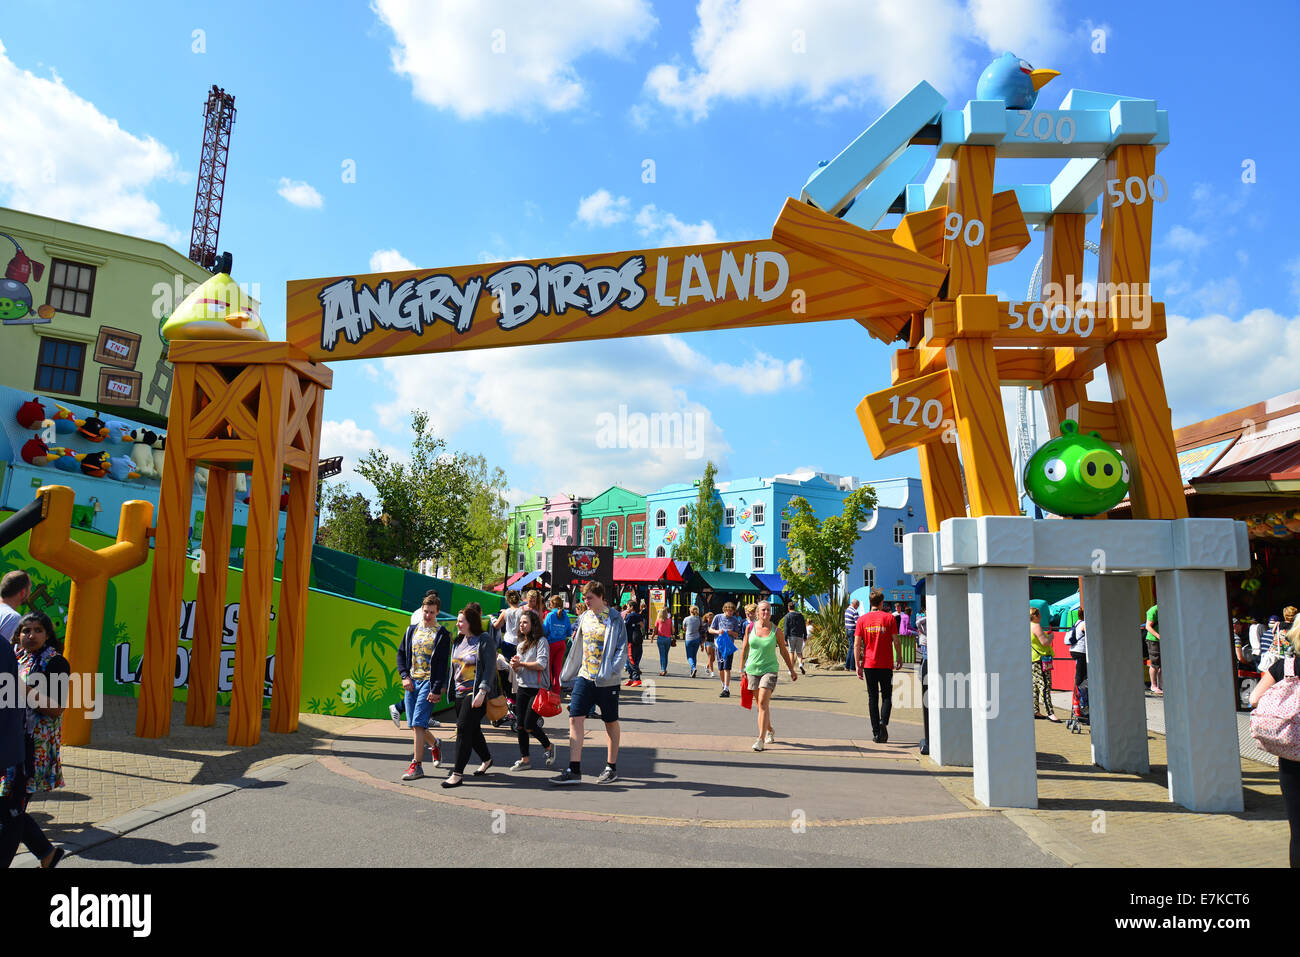 Panneau d'entrée d'Angry Birds Land, le parc à thème Thorpe Park, Chertsey, Surrey, Angleterre, Royaume-Uni Banque D'Images